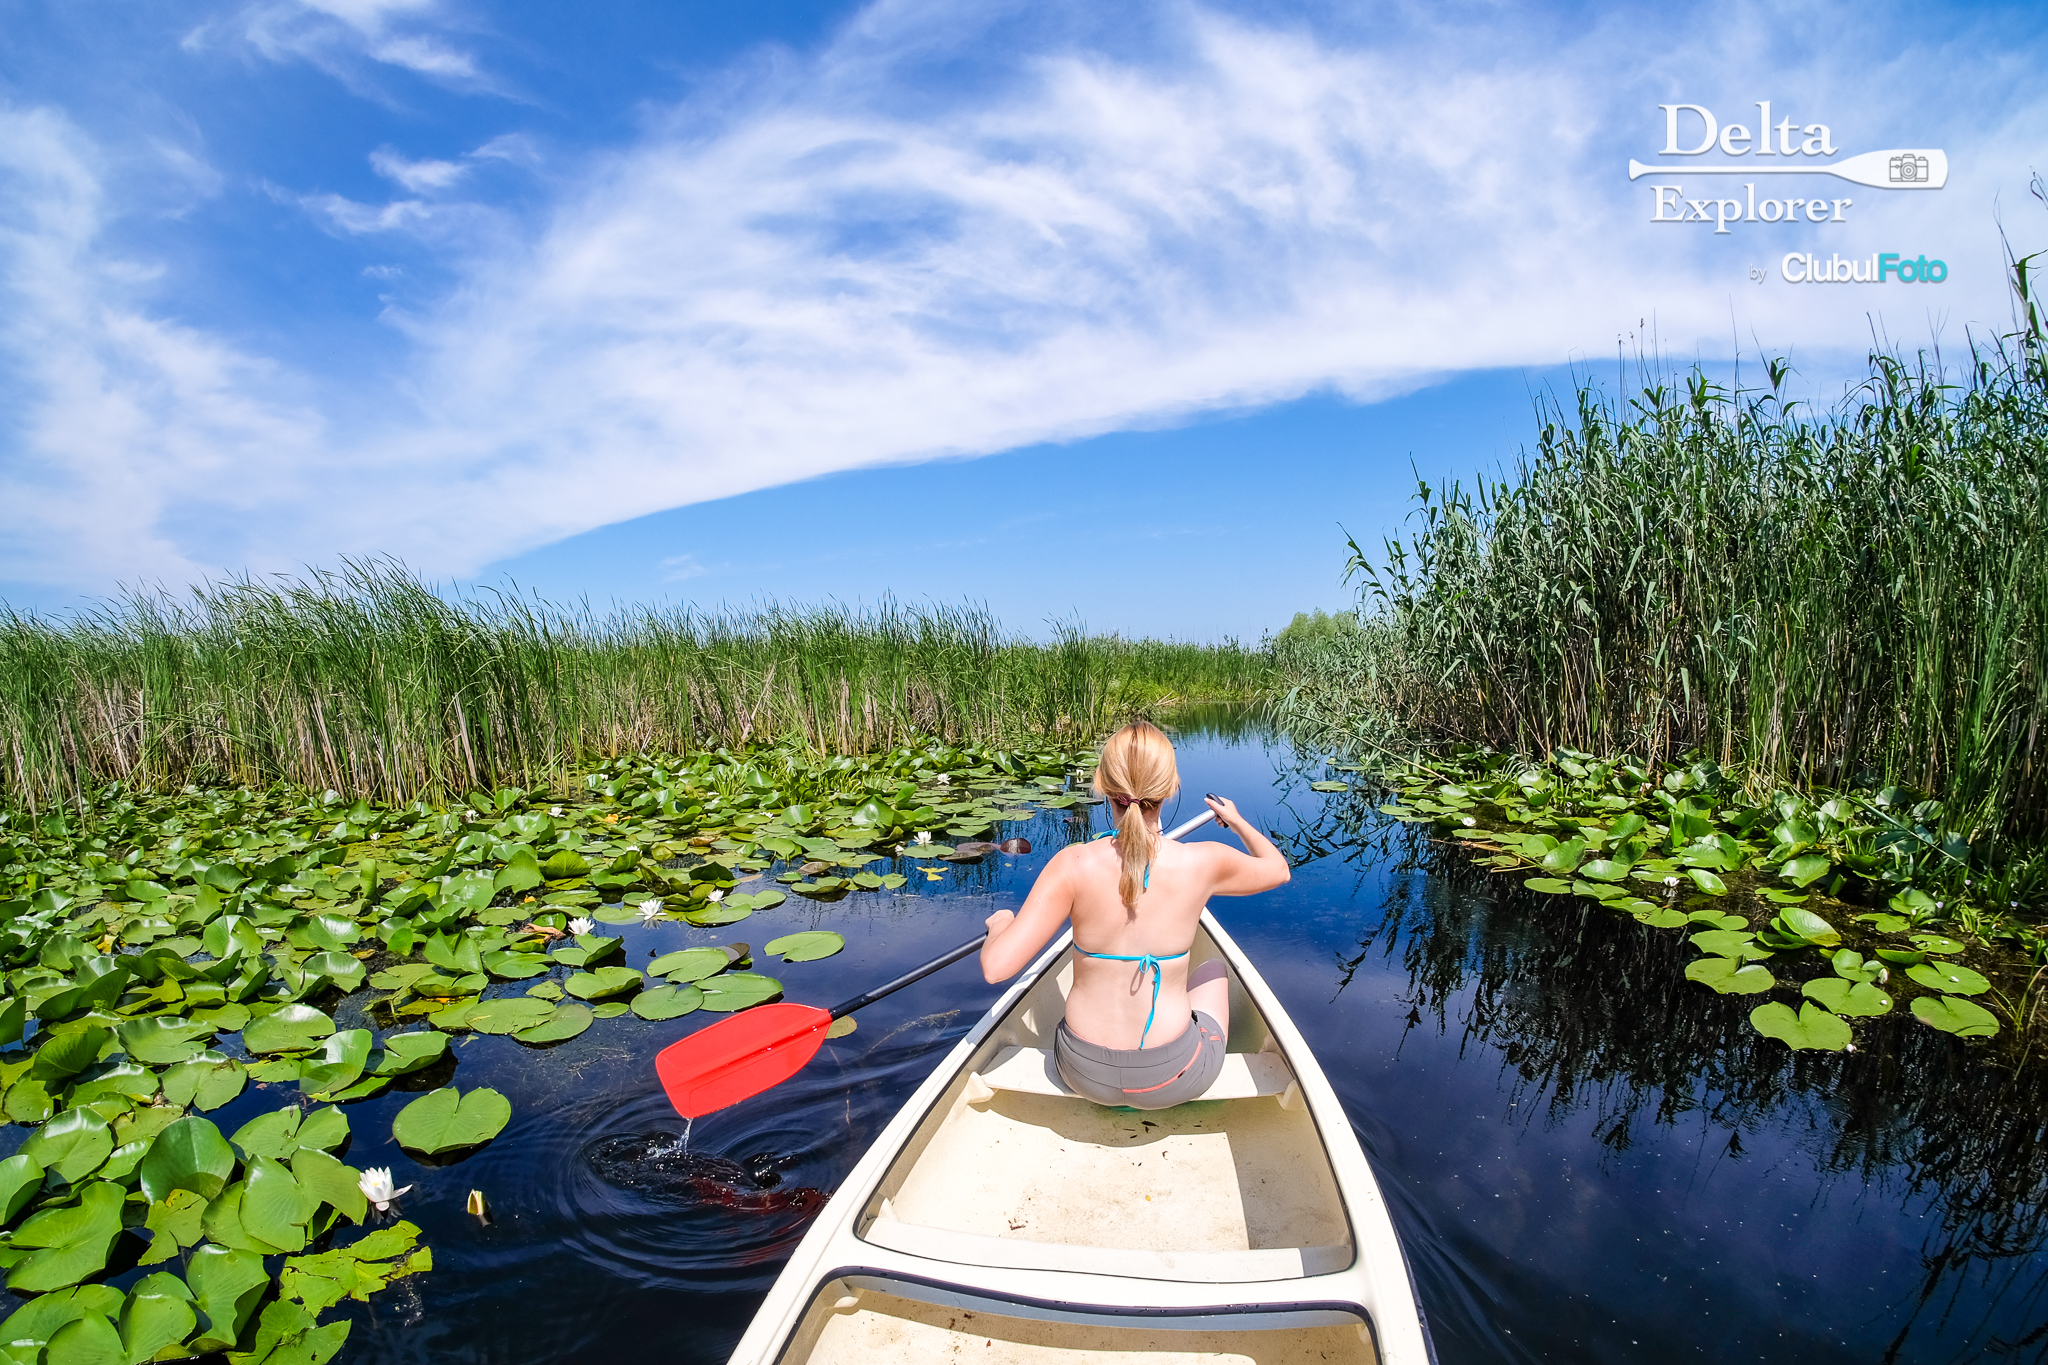 Exploram canalele Deltei in ritmul nostru: cu canoe de doua persoane